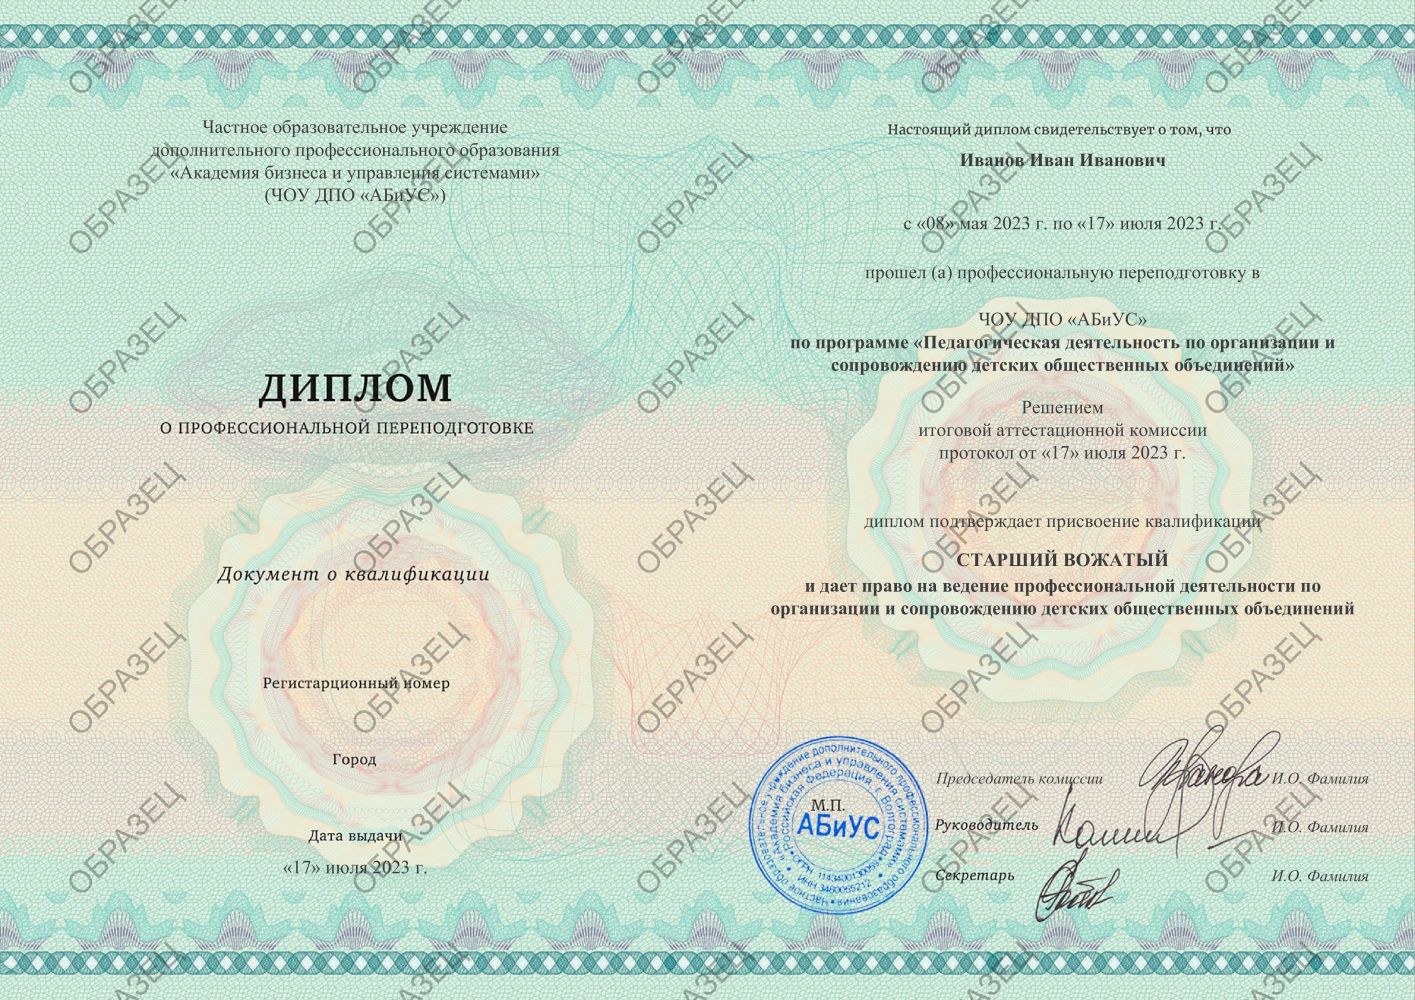 Диплом Педагогическая деятельность по организации и сопровождению детских общественных объединений 260 часов 9688 руб.